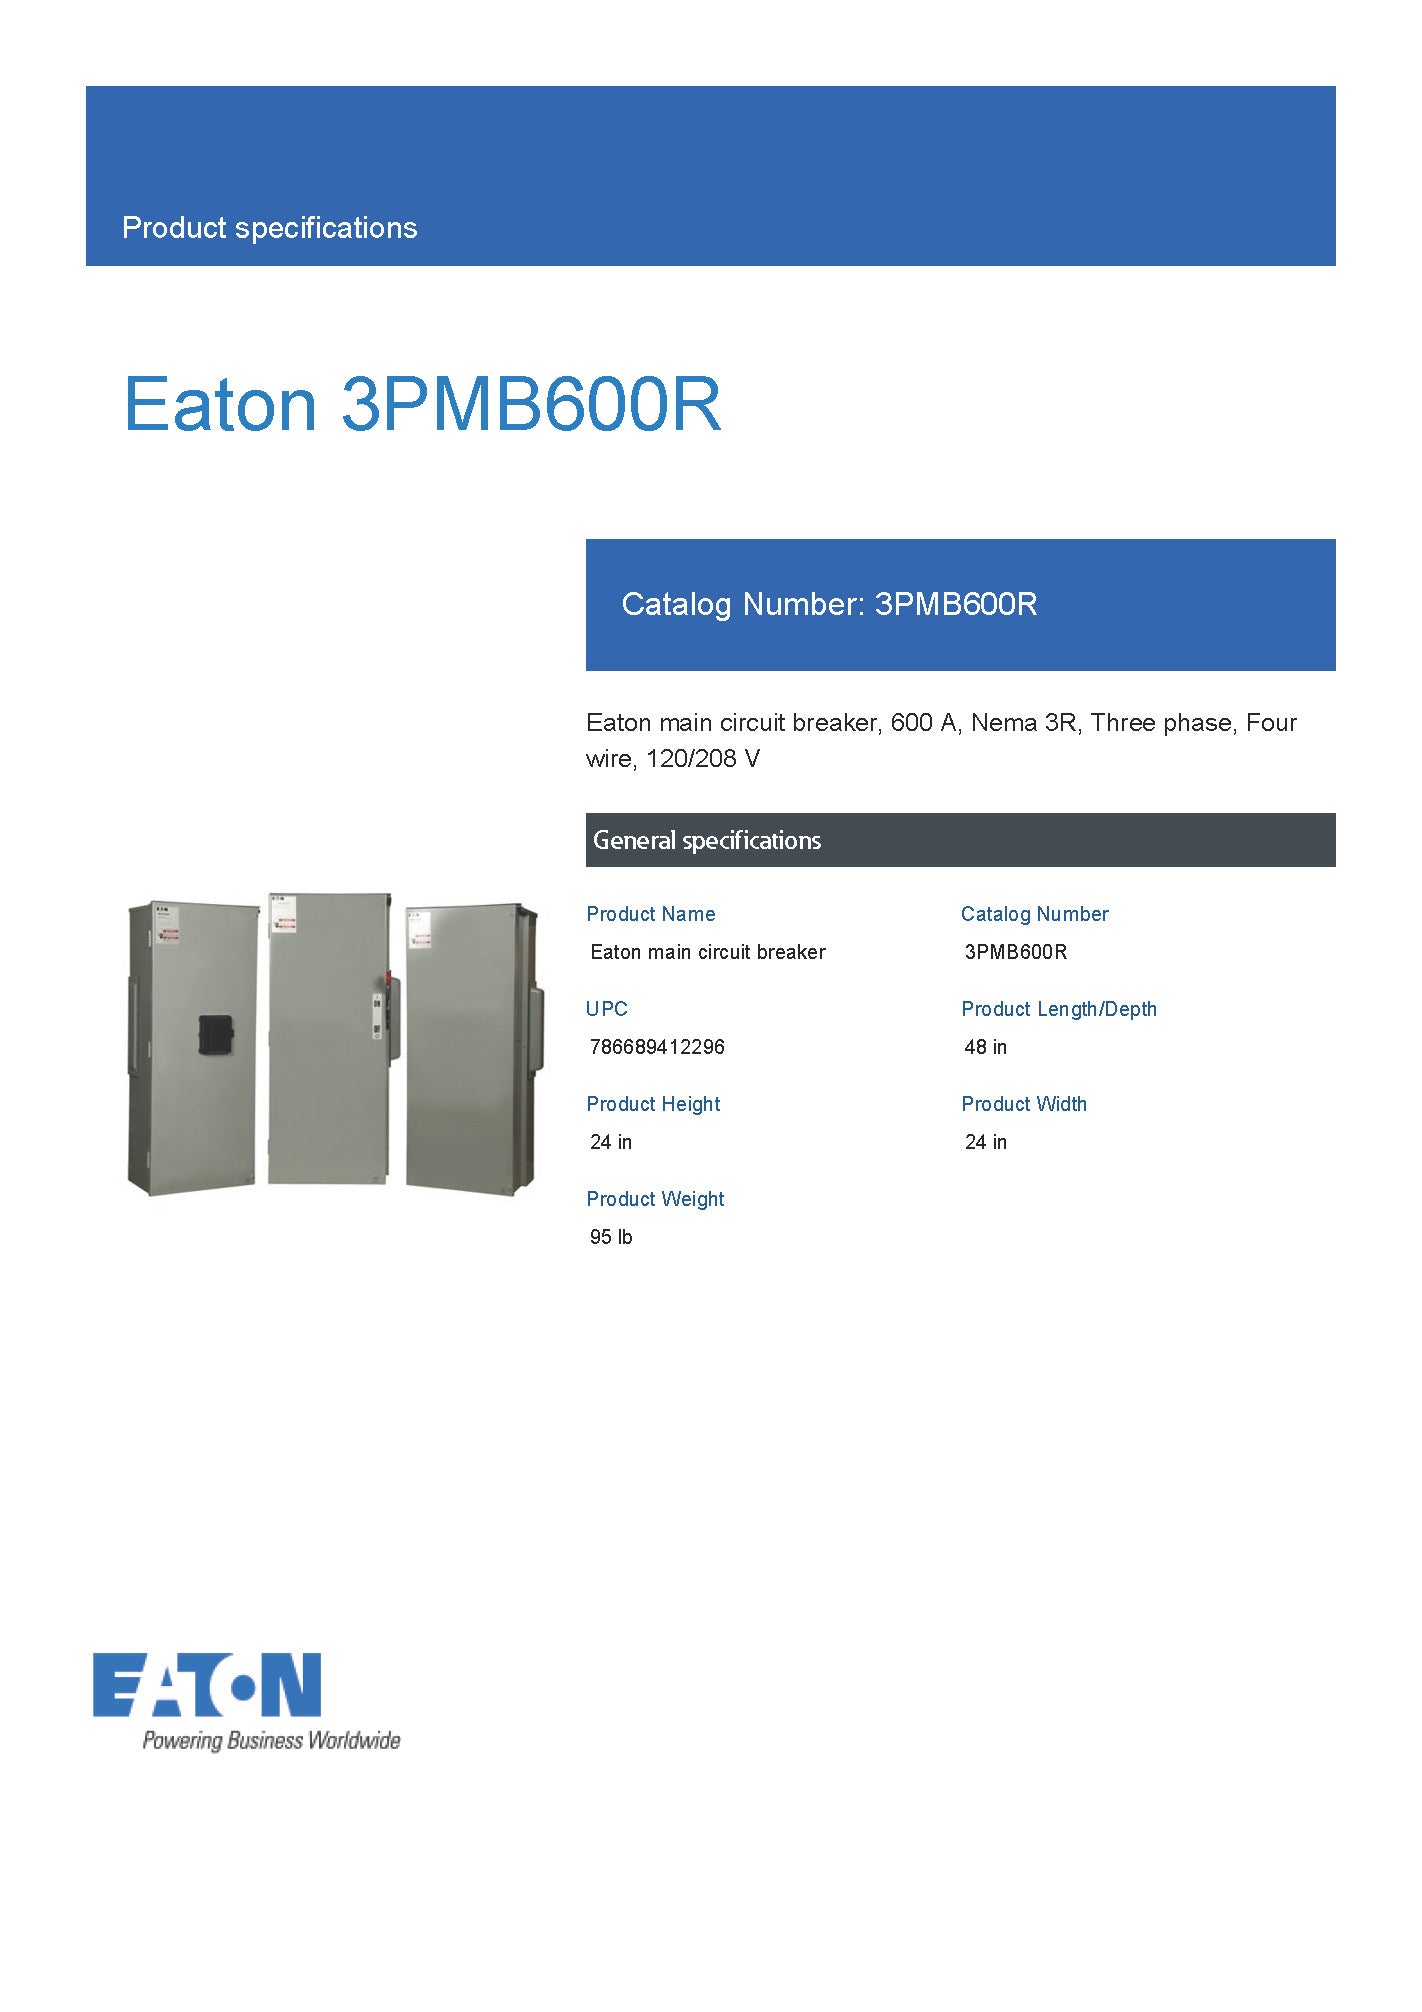 Eaton 3PMB600R Three Phase 600A Main Disconnect